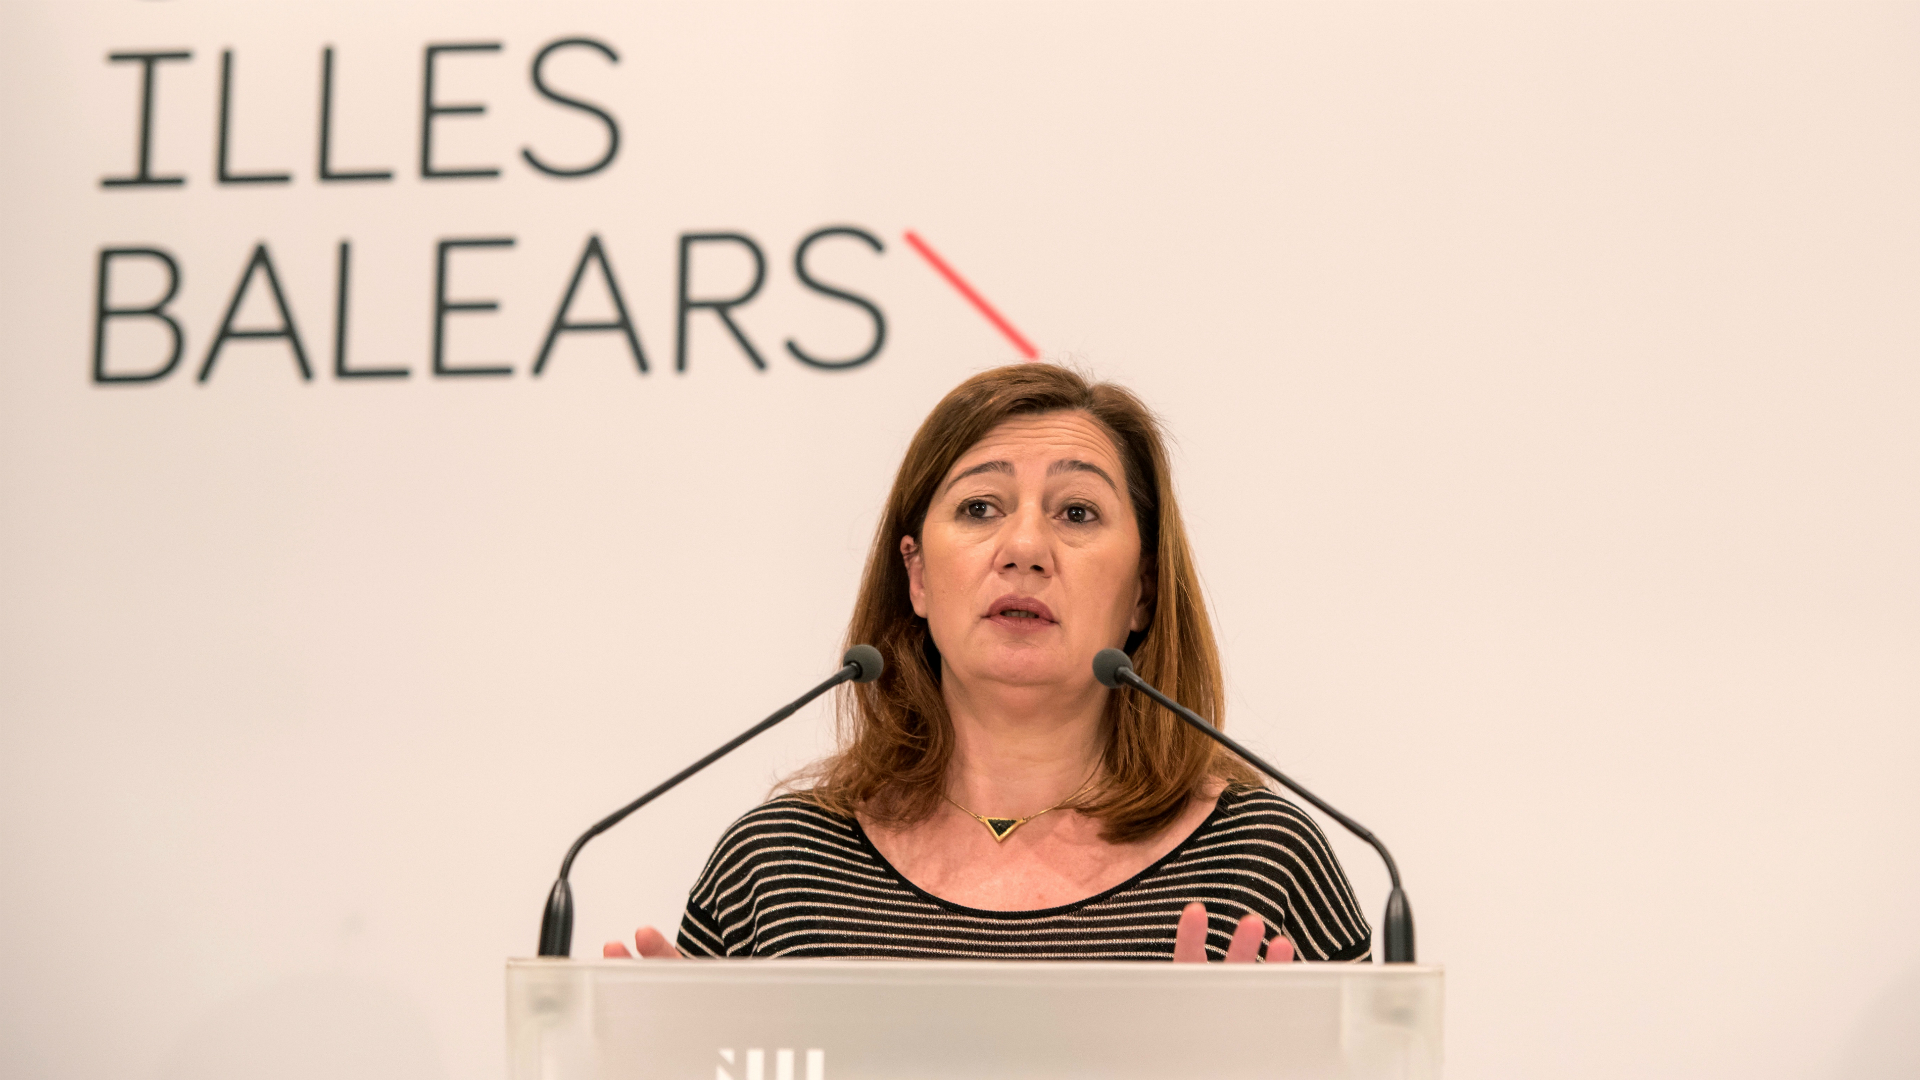 Presidenta das Ilhas Baleares é criticada por falar em catalão